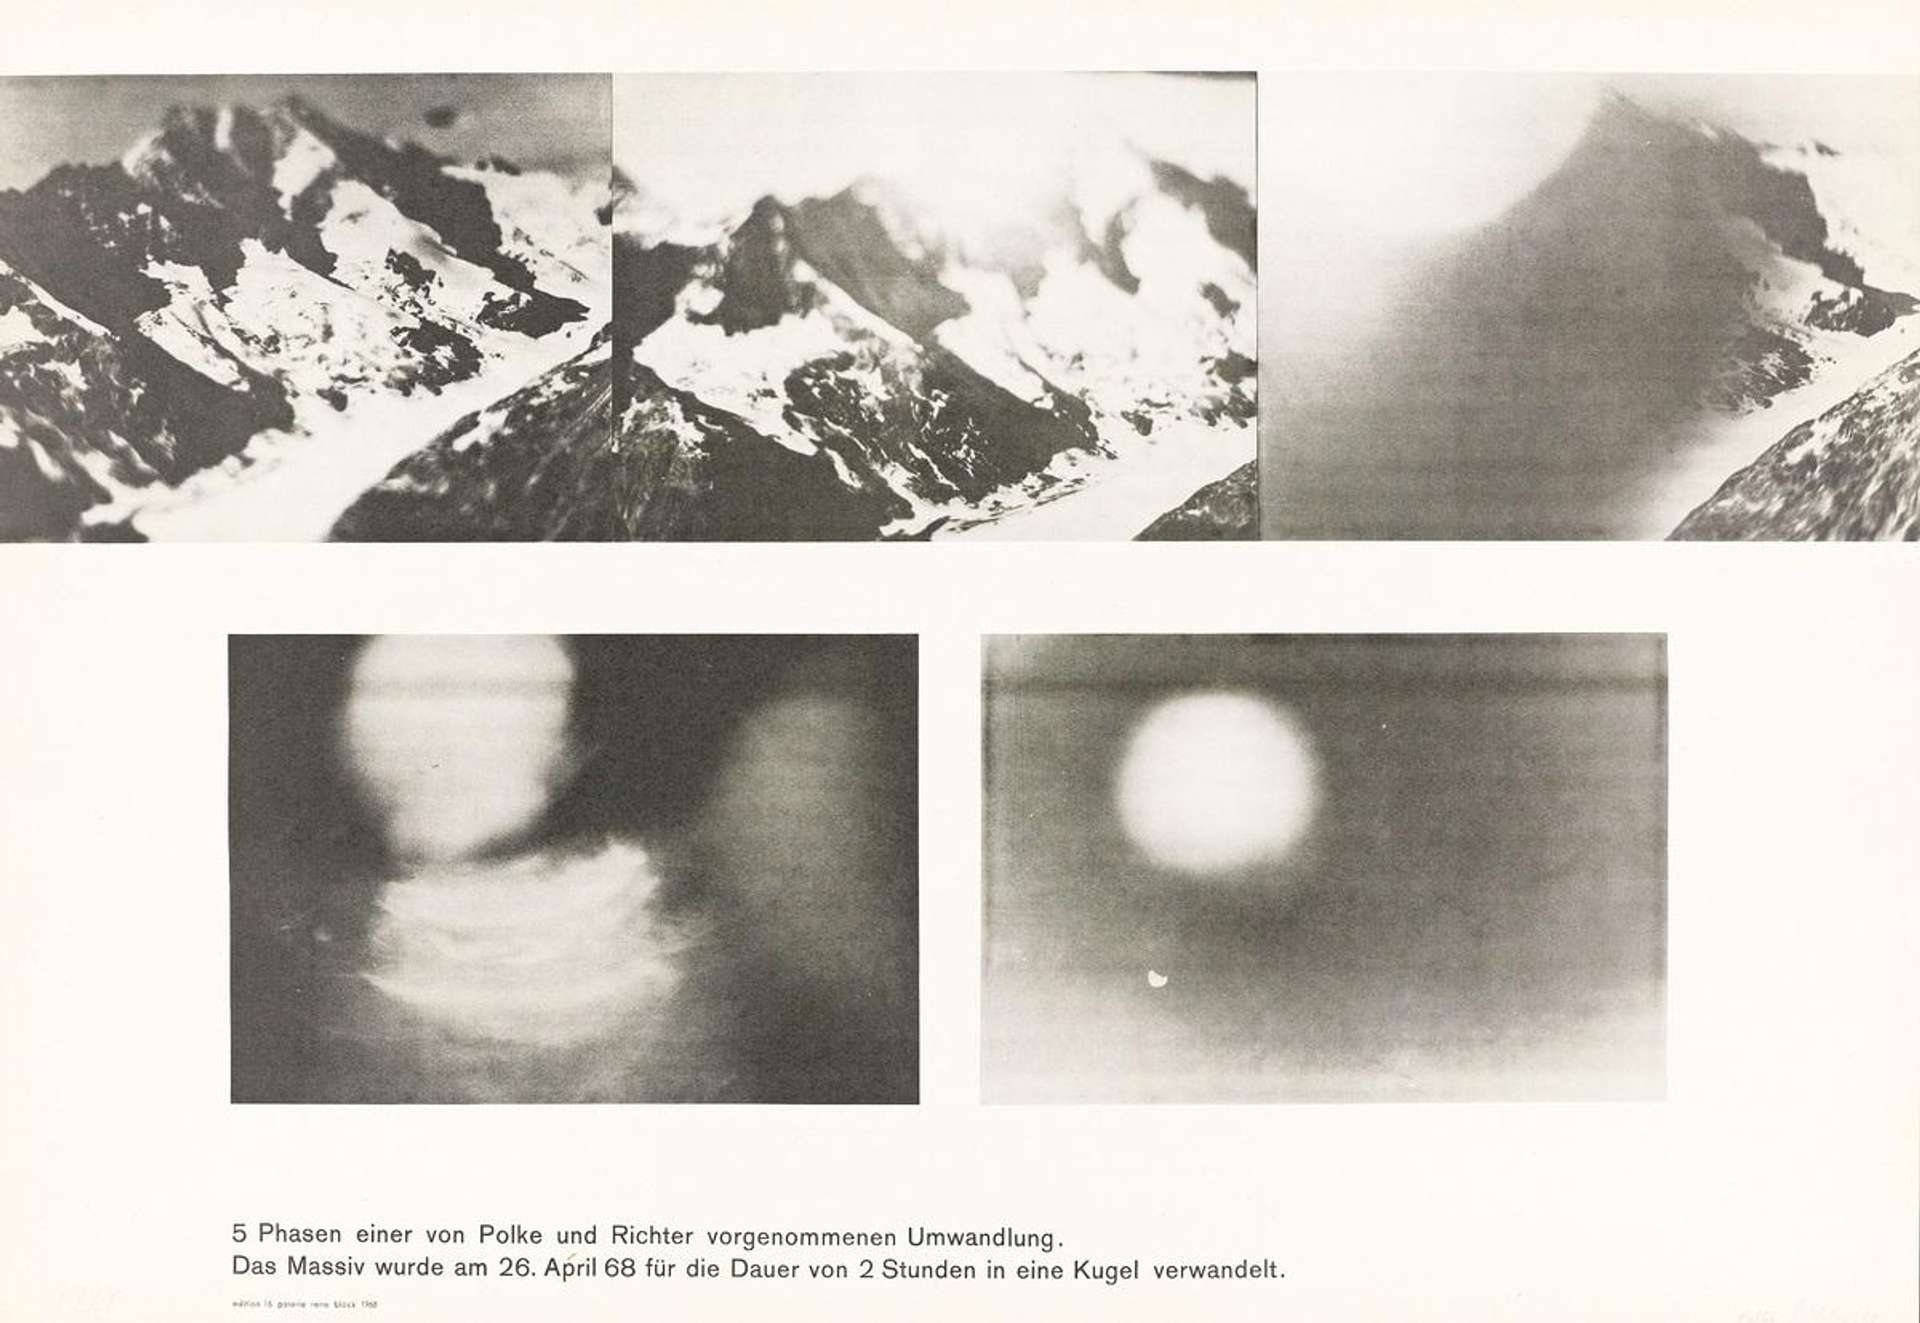 Umwandlung - Signed Print by Gerhard Richter 1968 - MyArtBroker